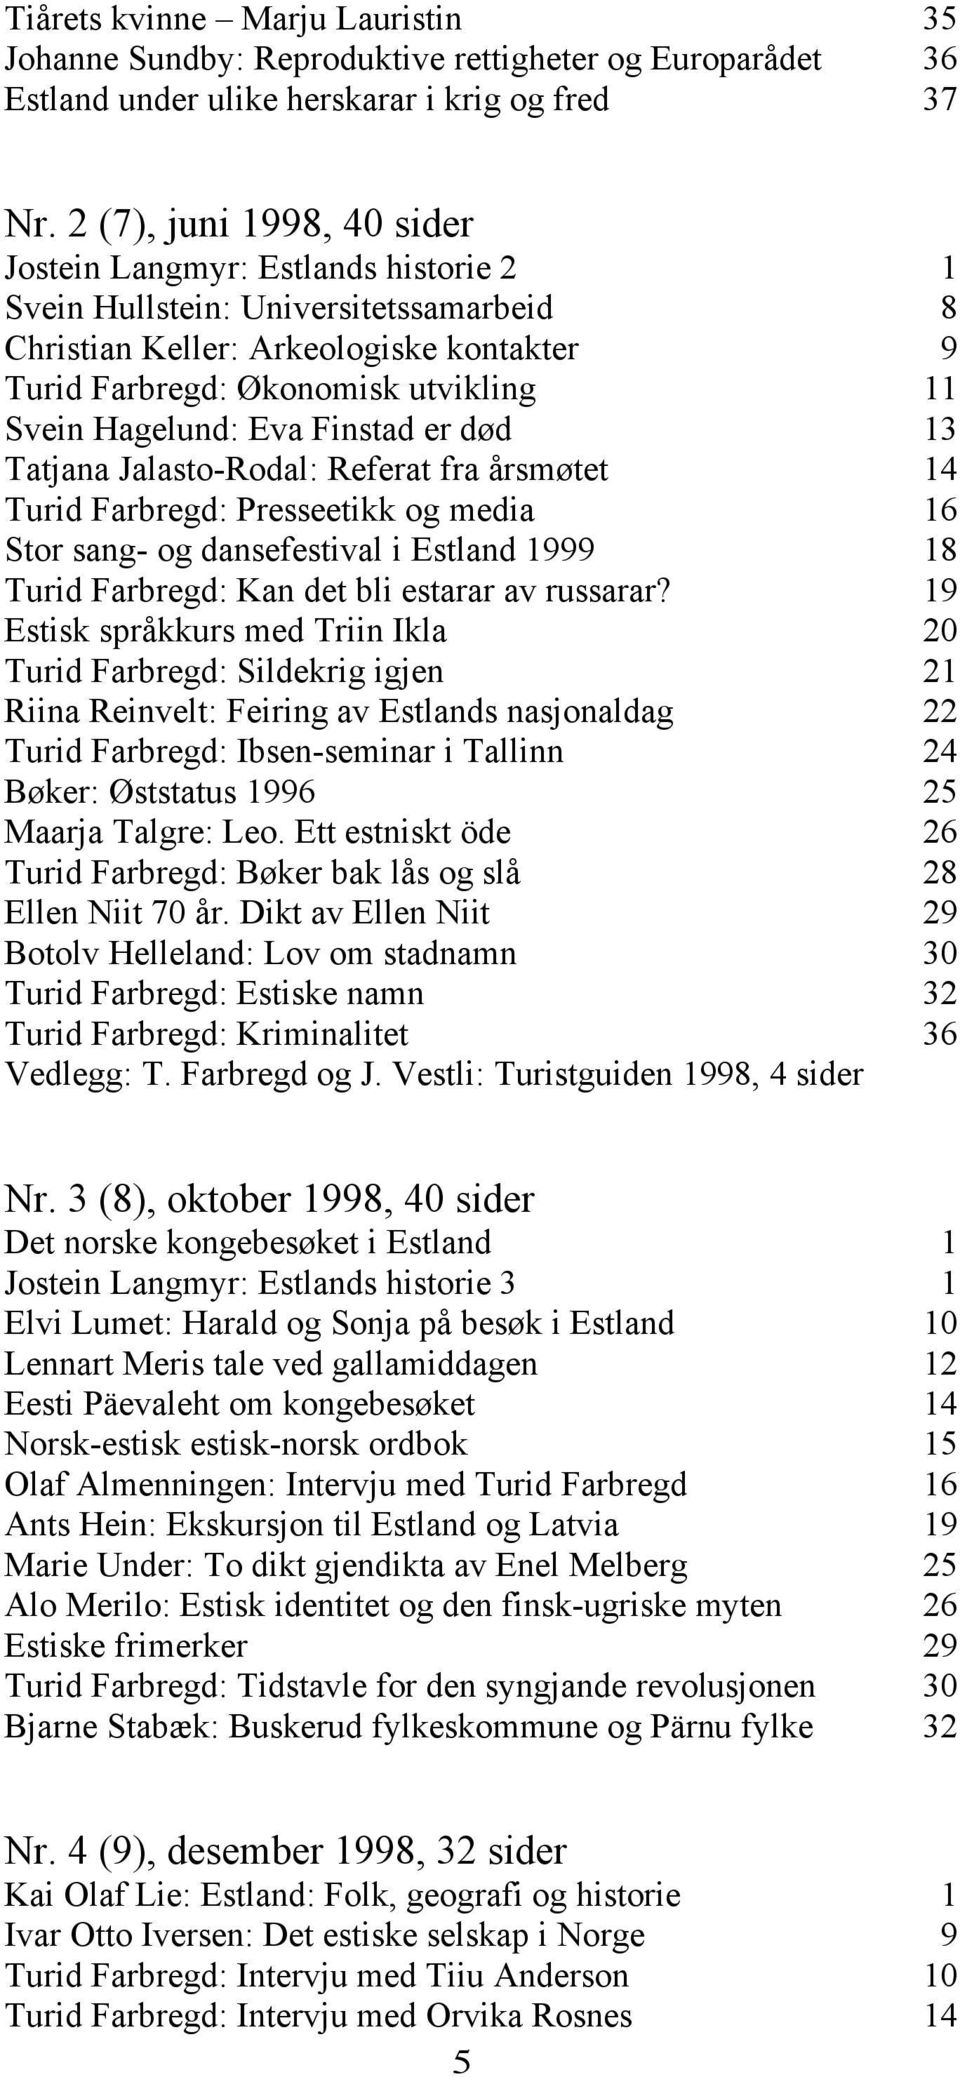 Hagelund: Eva Finstad er død 13 Tatjana Jalasto-Rodal: Referat fra årsmøtet 14 Turid Farbregd: Presseetikk og media 16 Stor sang- og dansefestival i Estland 1999 18 Turid Farbregd: Kan det bli